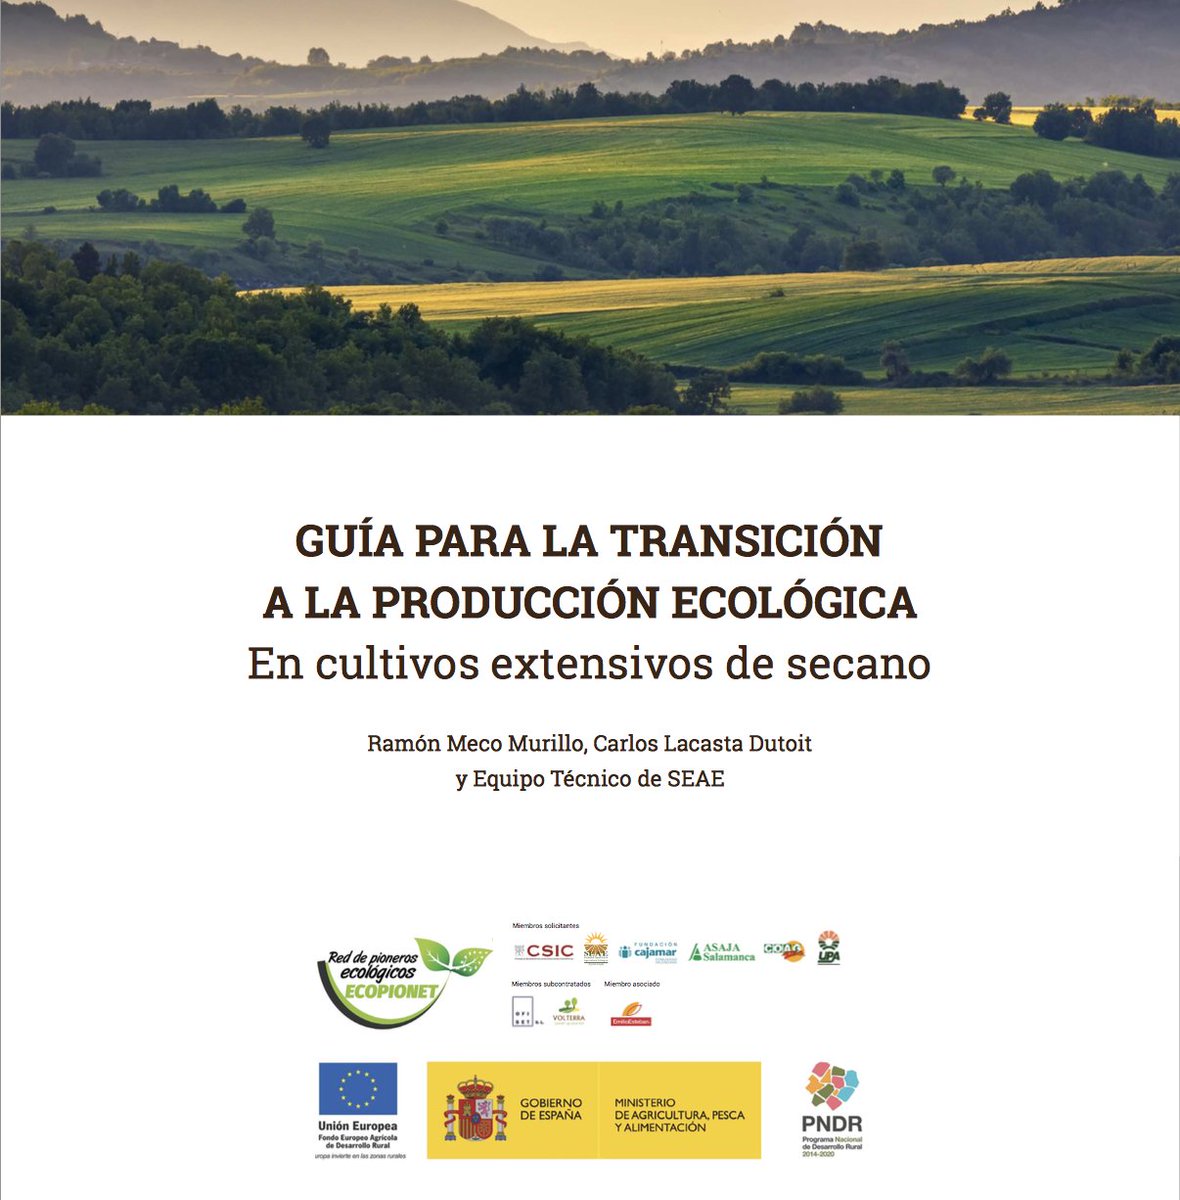 En esta “Guía para la transición a la producción ecológica en los cultivos extensivos de #secano” de @ecopionet y @SEAE_Agroecolog están todas las #claves fácilmente explicadas: 🌧️Cambios en la climatología 🌱Suelos 🌿La competencia 🌾Rotaciones de cultivos 💸Rentabilidad